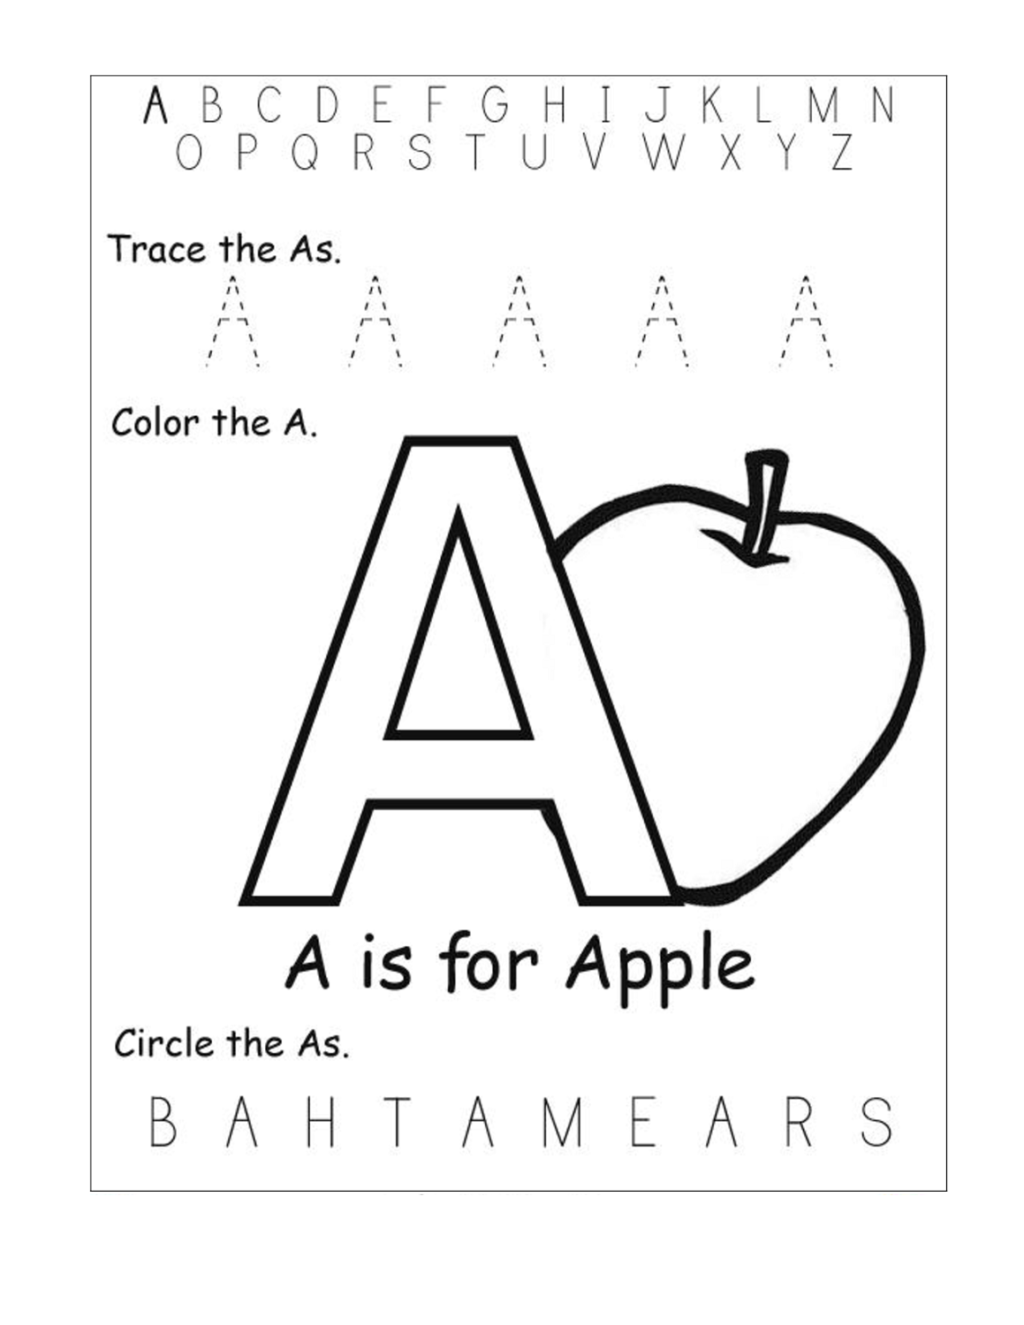 50 Marvelous Alphabet Worksheets Kindergarten Photo Ideas for Letter A Worksheets For Toddlers